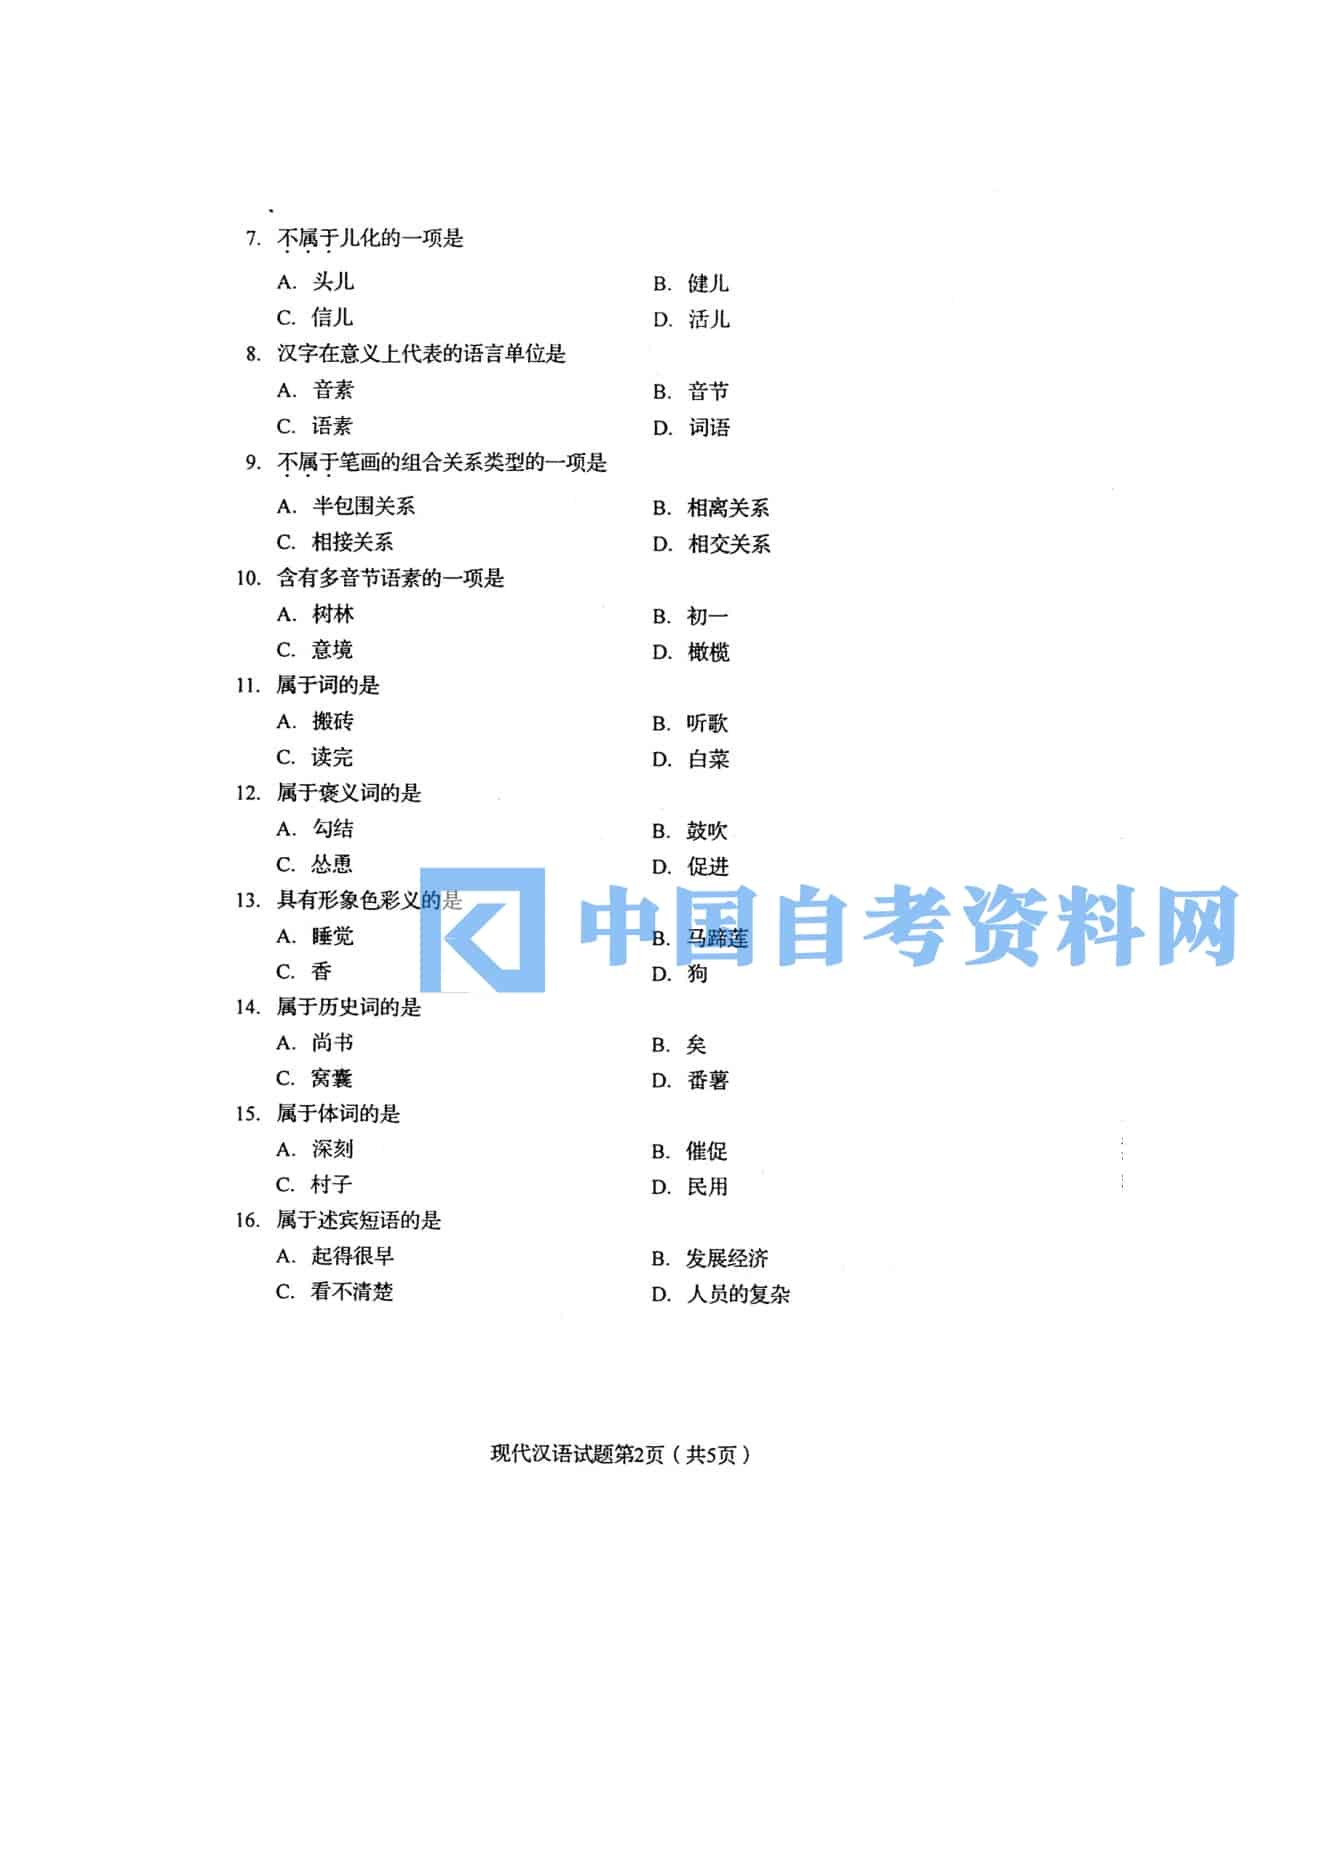 高等教育自学考试00535现代汉语历年真题及答案插图1